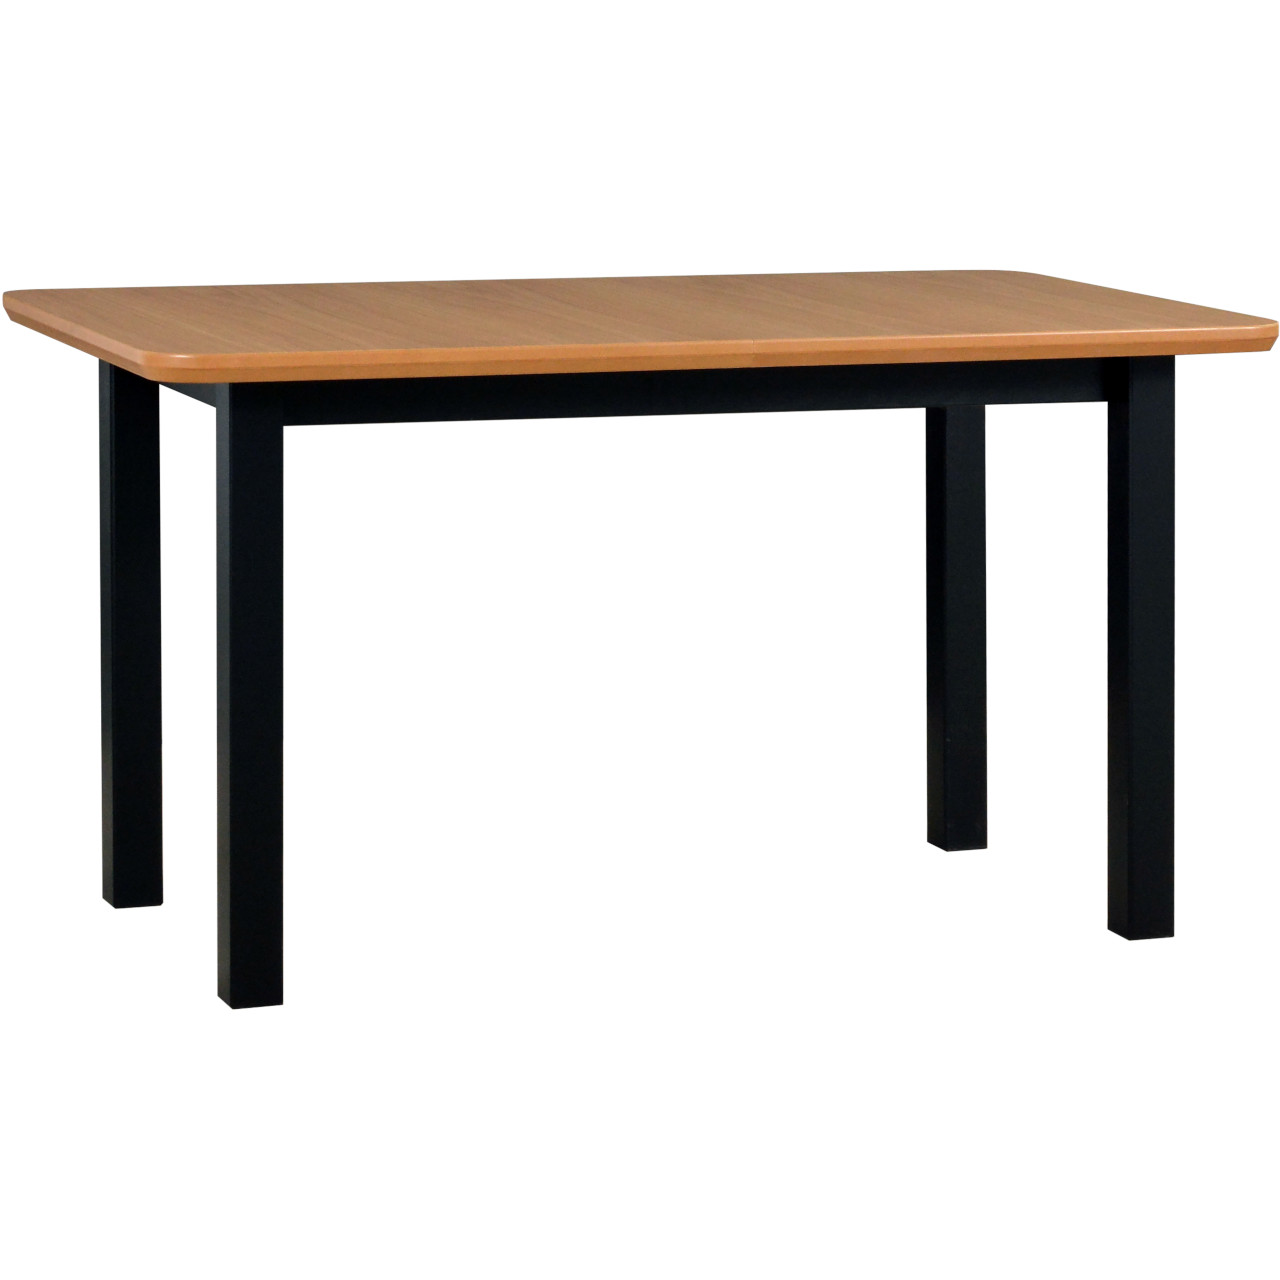 Table WENUS 2 S 80x140/180 oak veneer / black